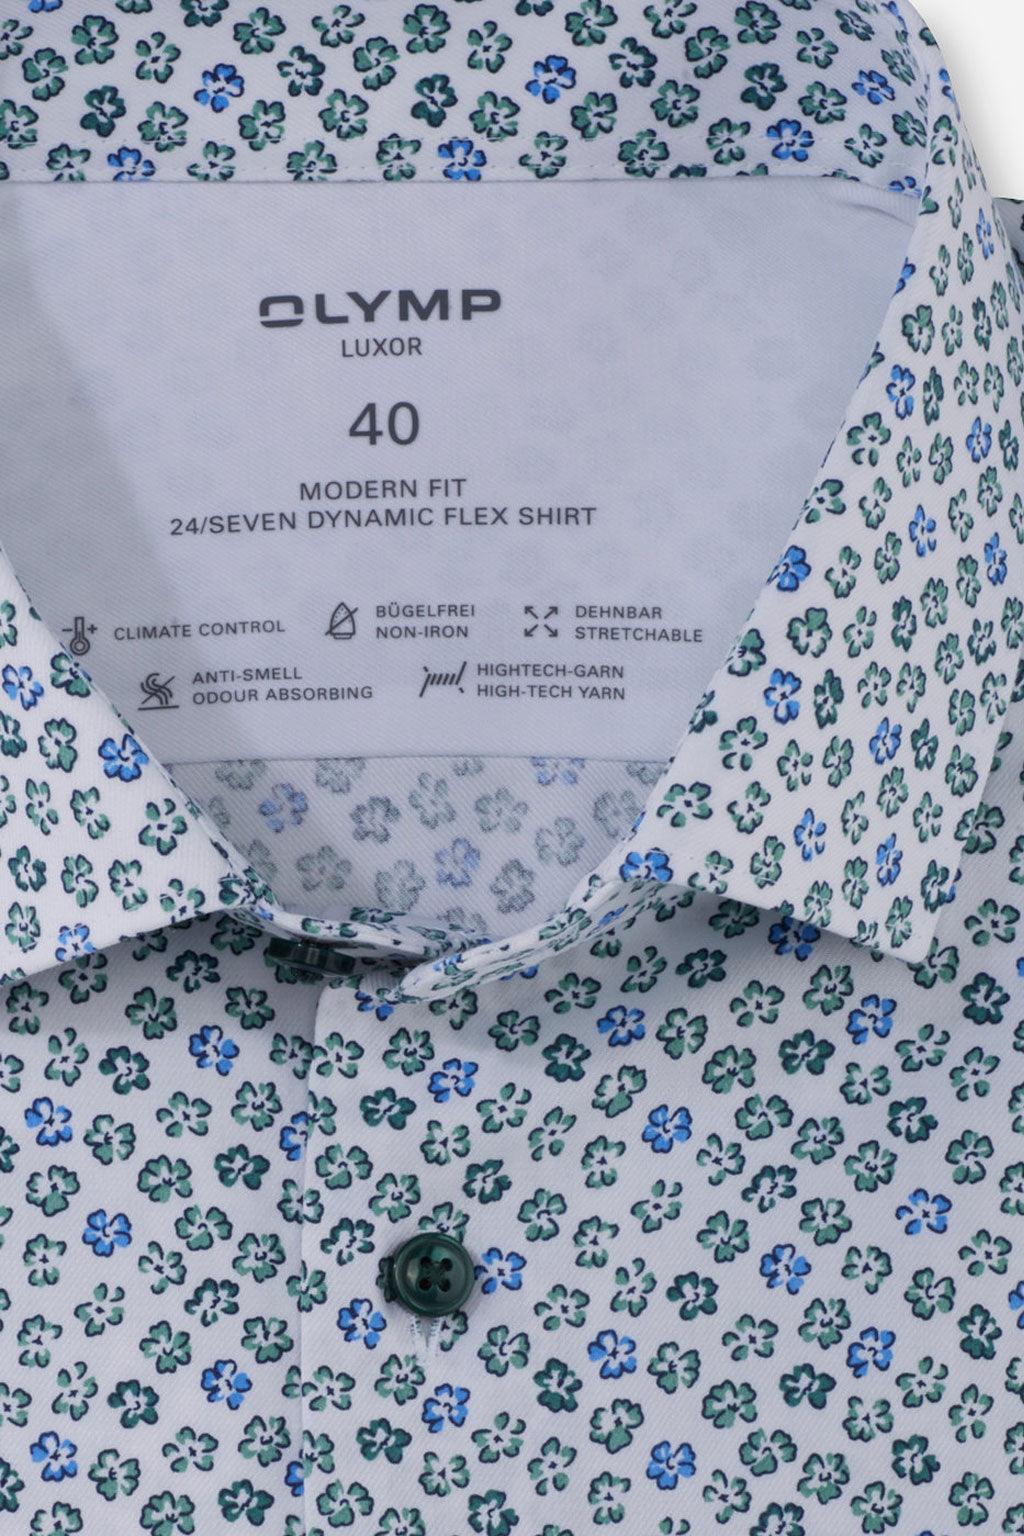 Olymp overhemd lange mouw